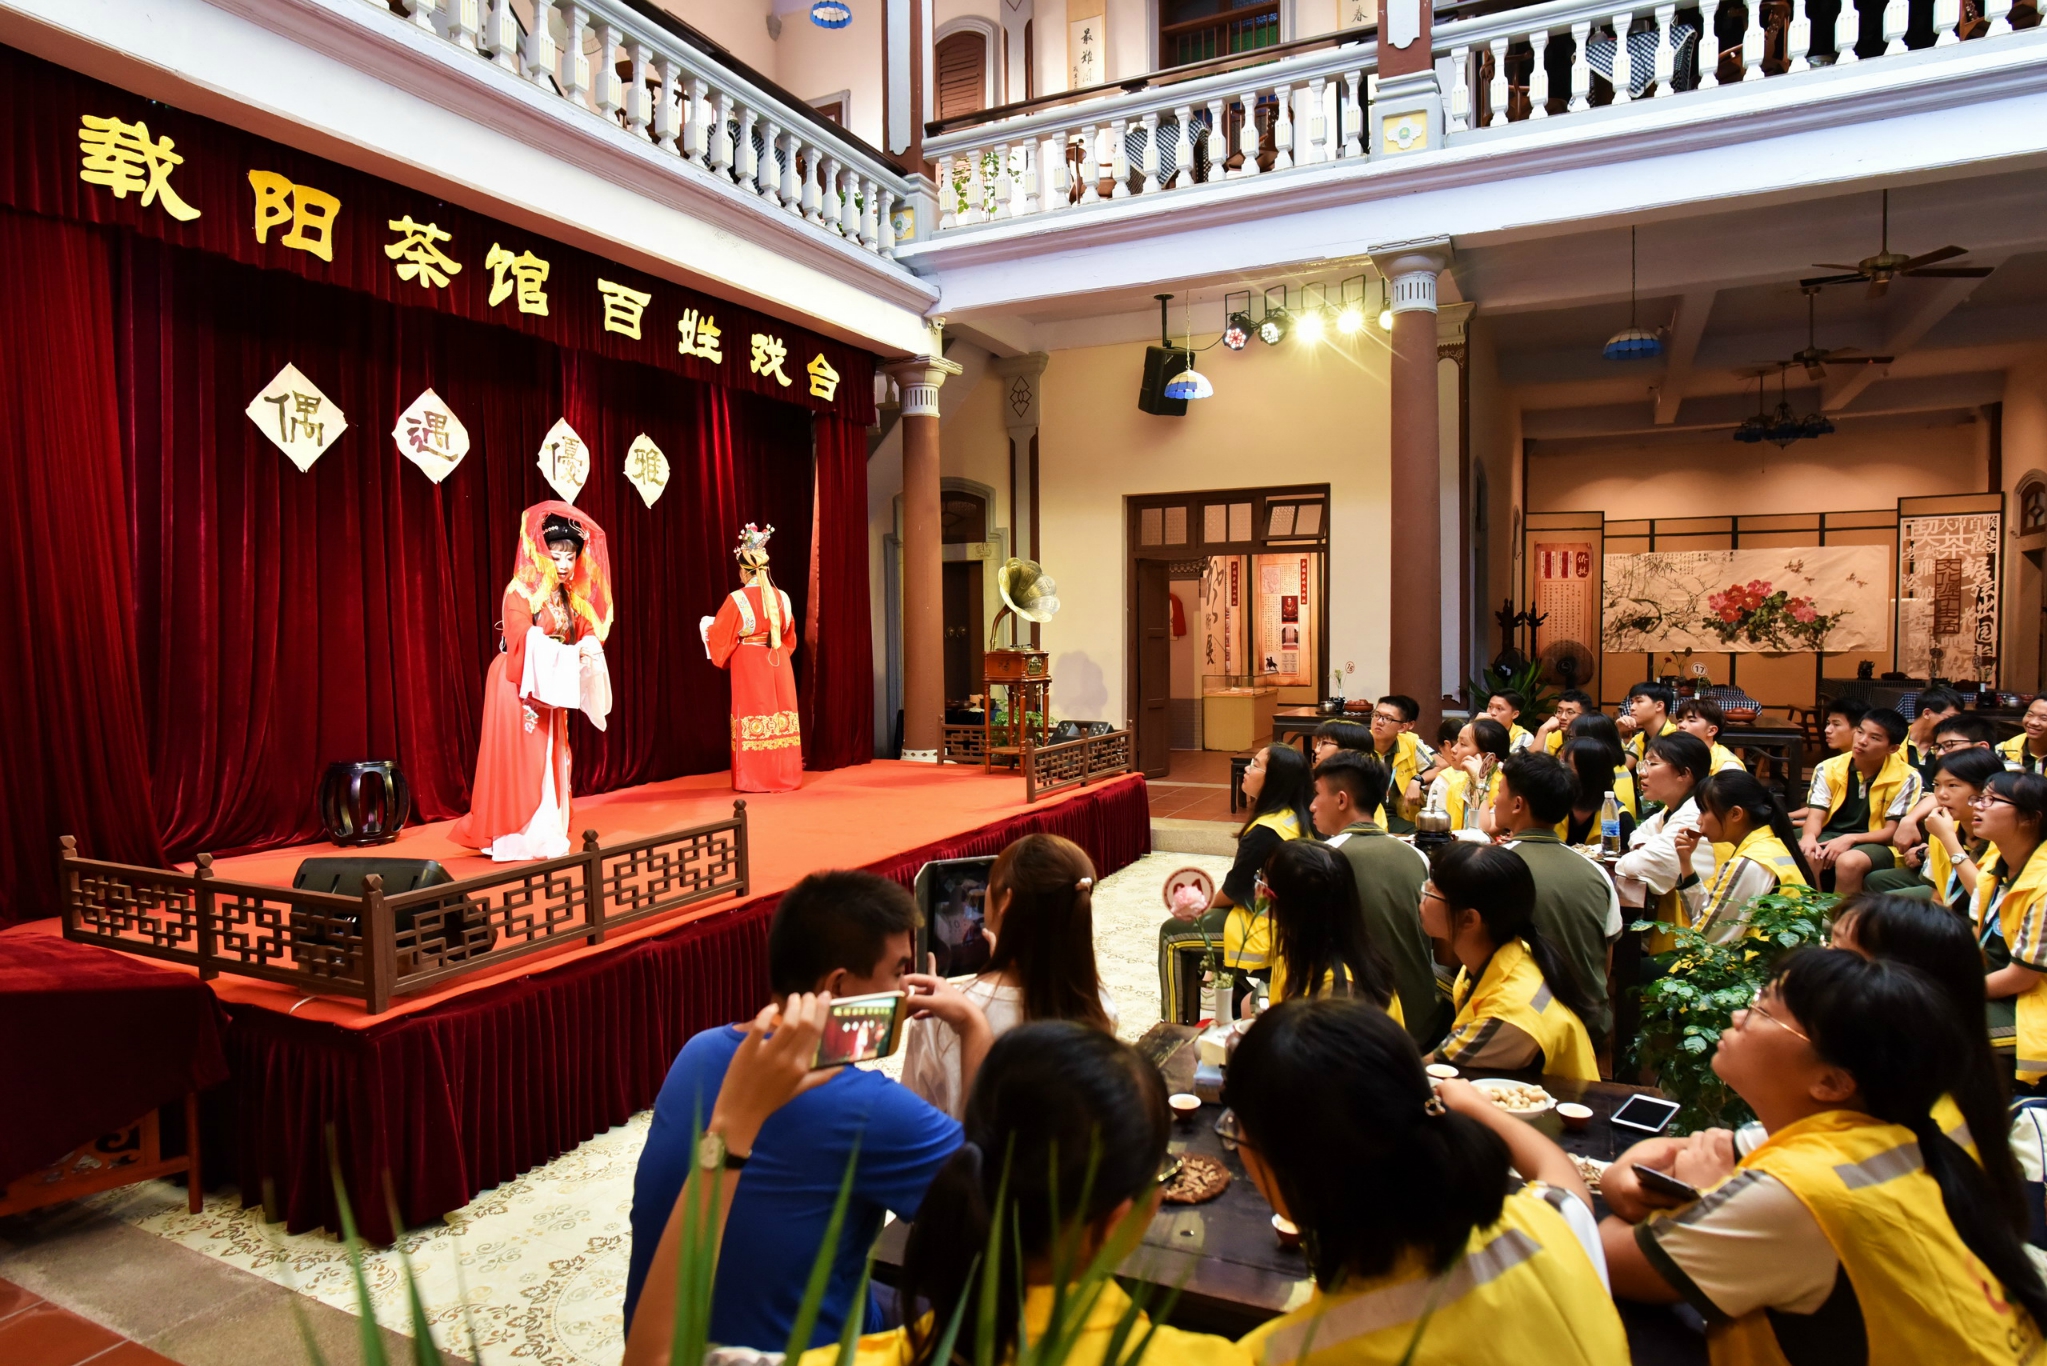 载阳茶馆的潮剧表演不会特别长会选出几个最经典的潮剧唱段给客人体验